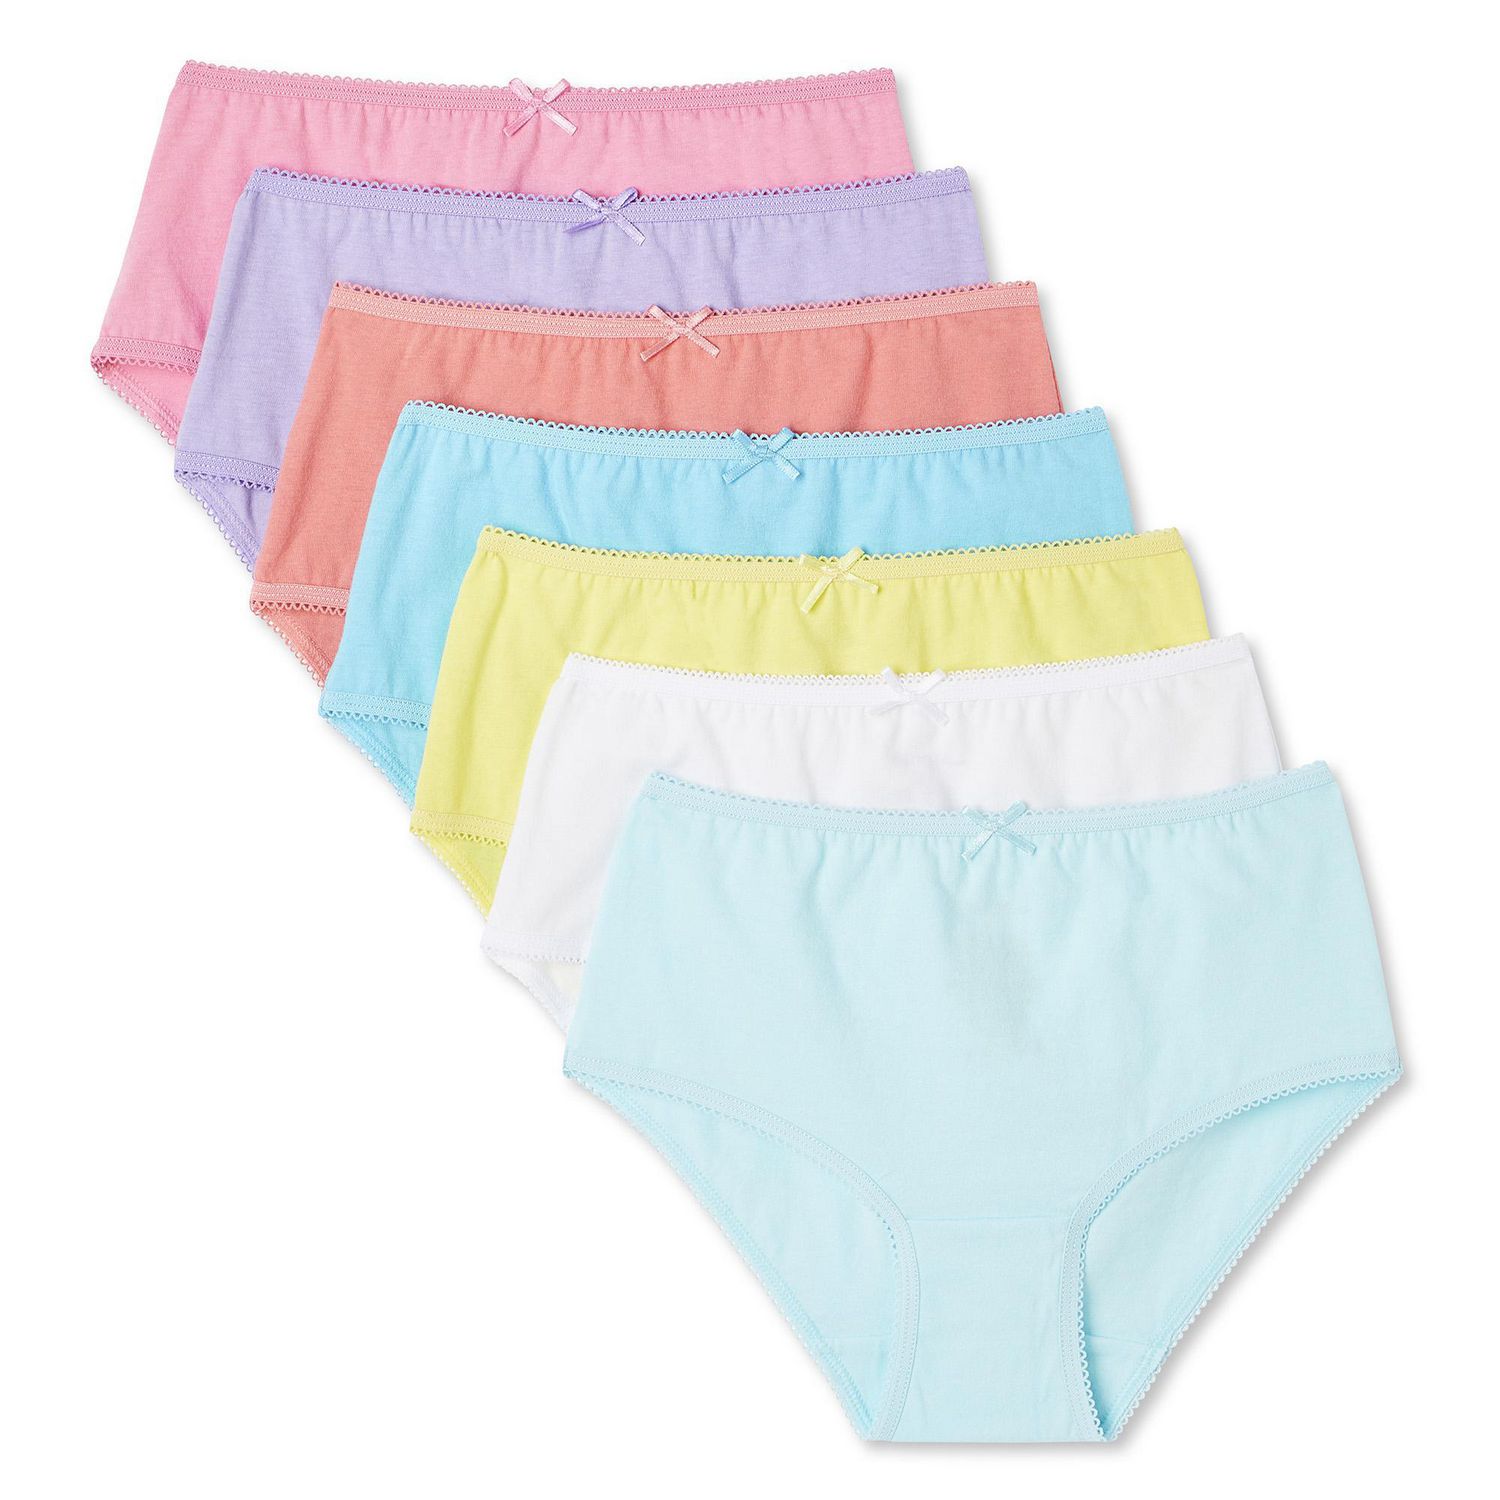 Fashion Girl Underwear Underwear Girl 12 Units / Lot Cotton Underwear 2-10Y  High Quality @ Best Price Online